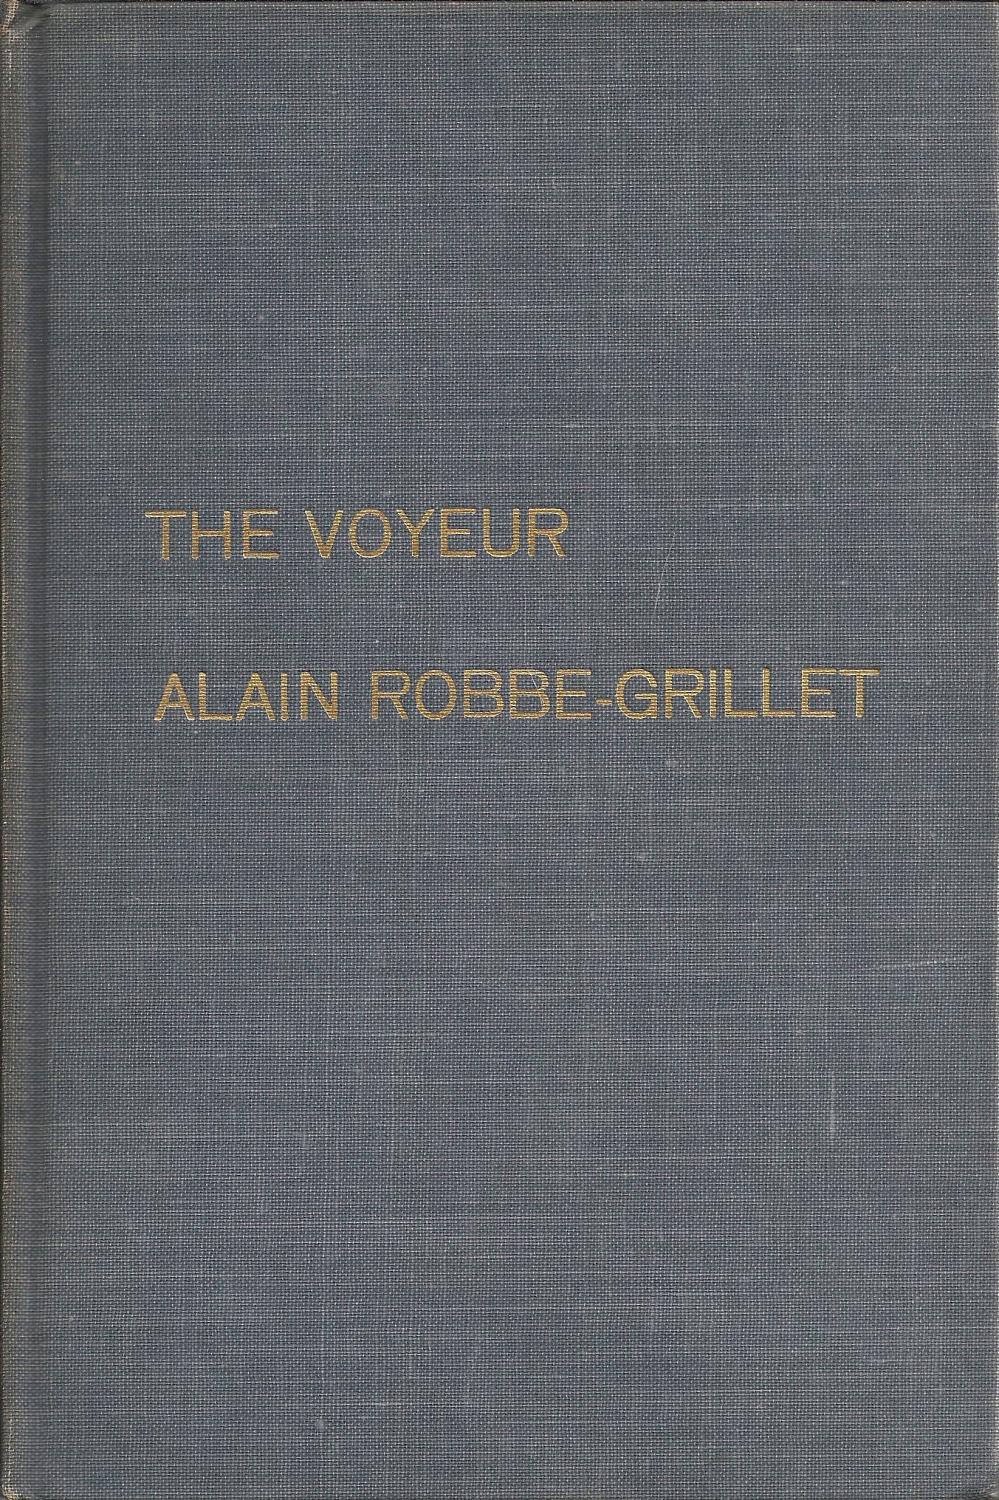 the voyeur alain robbe